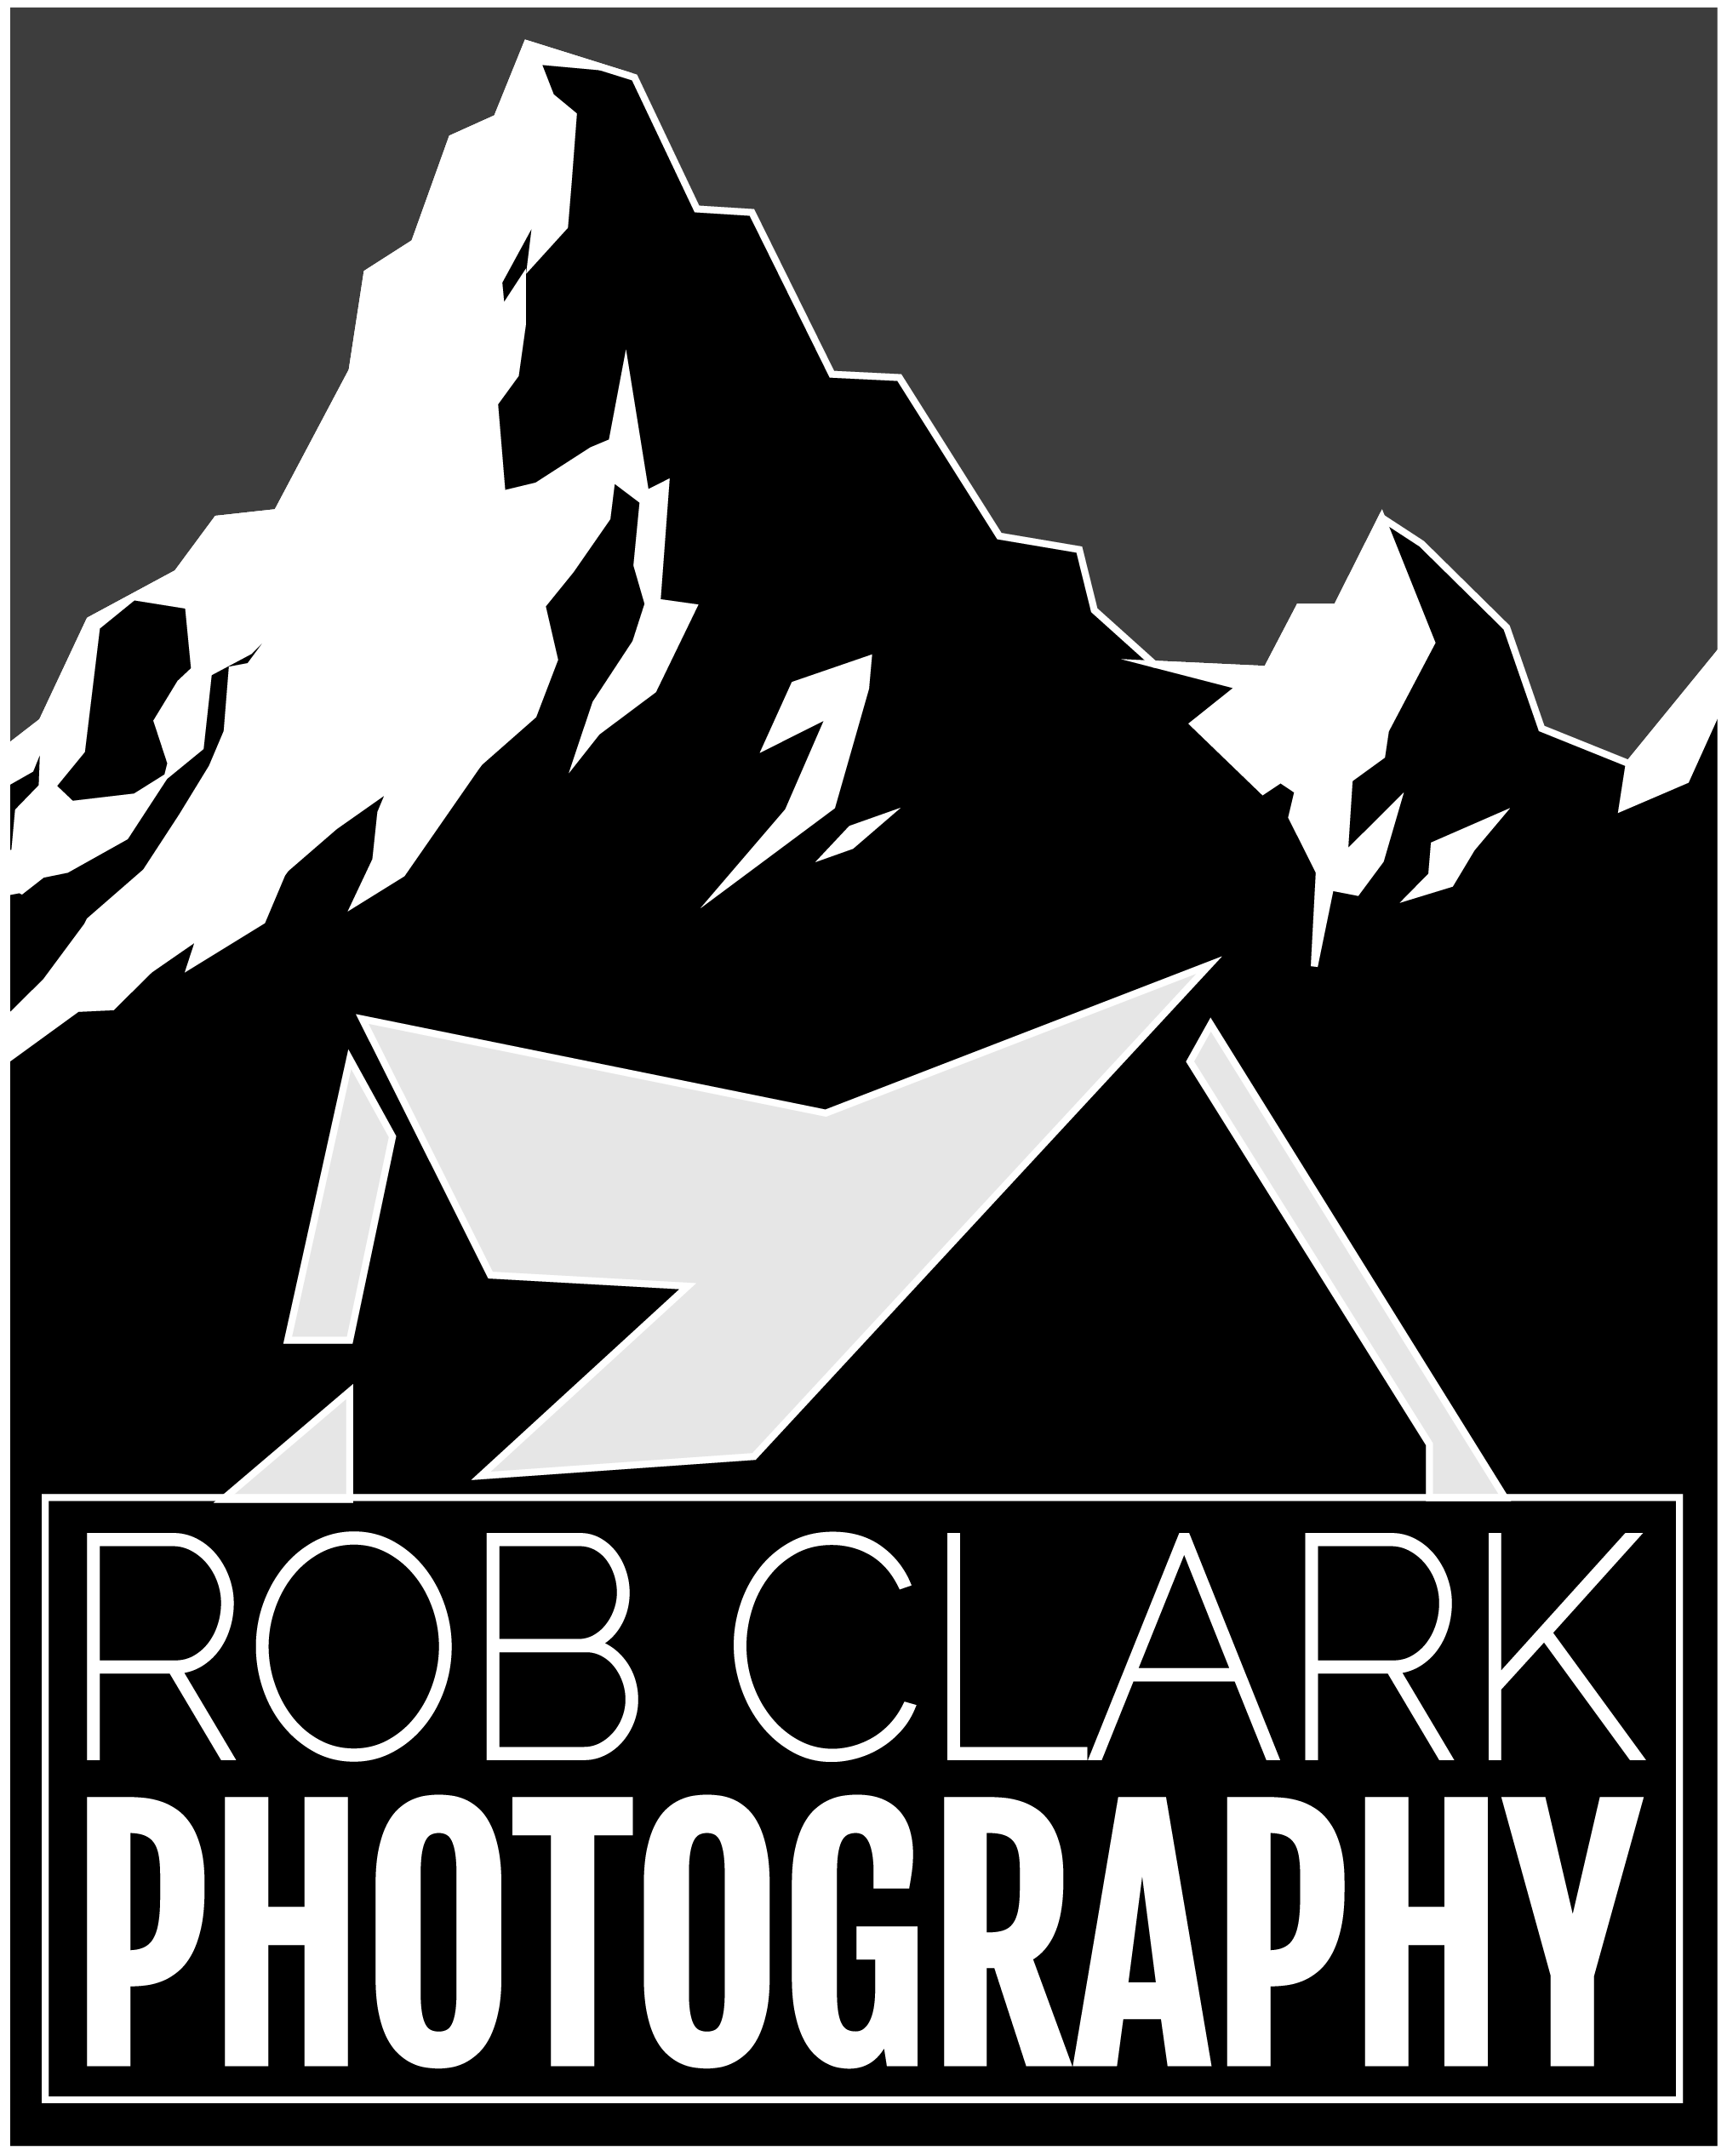 Robert Clark